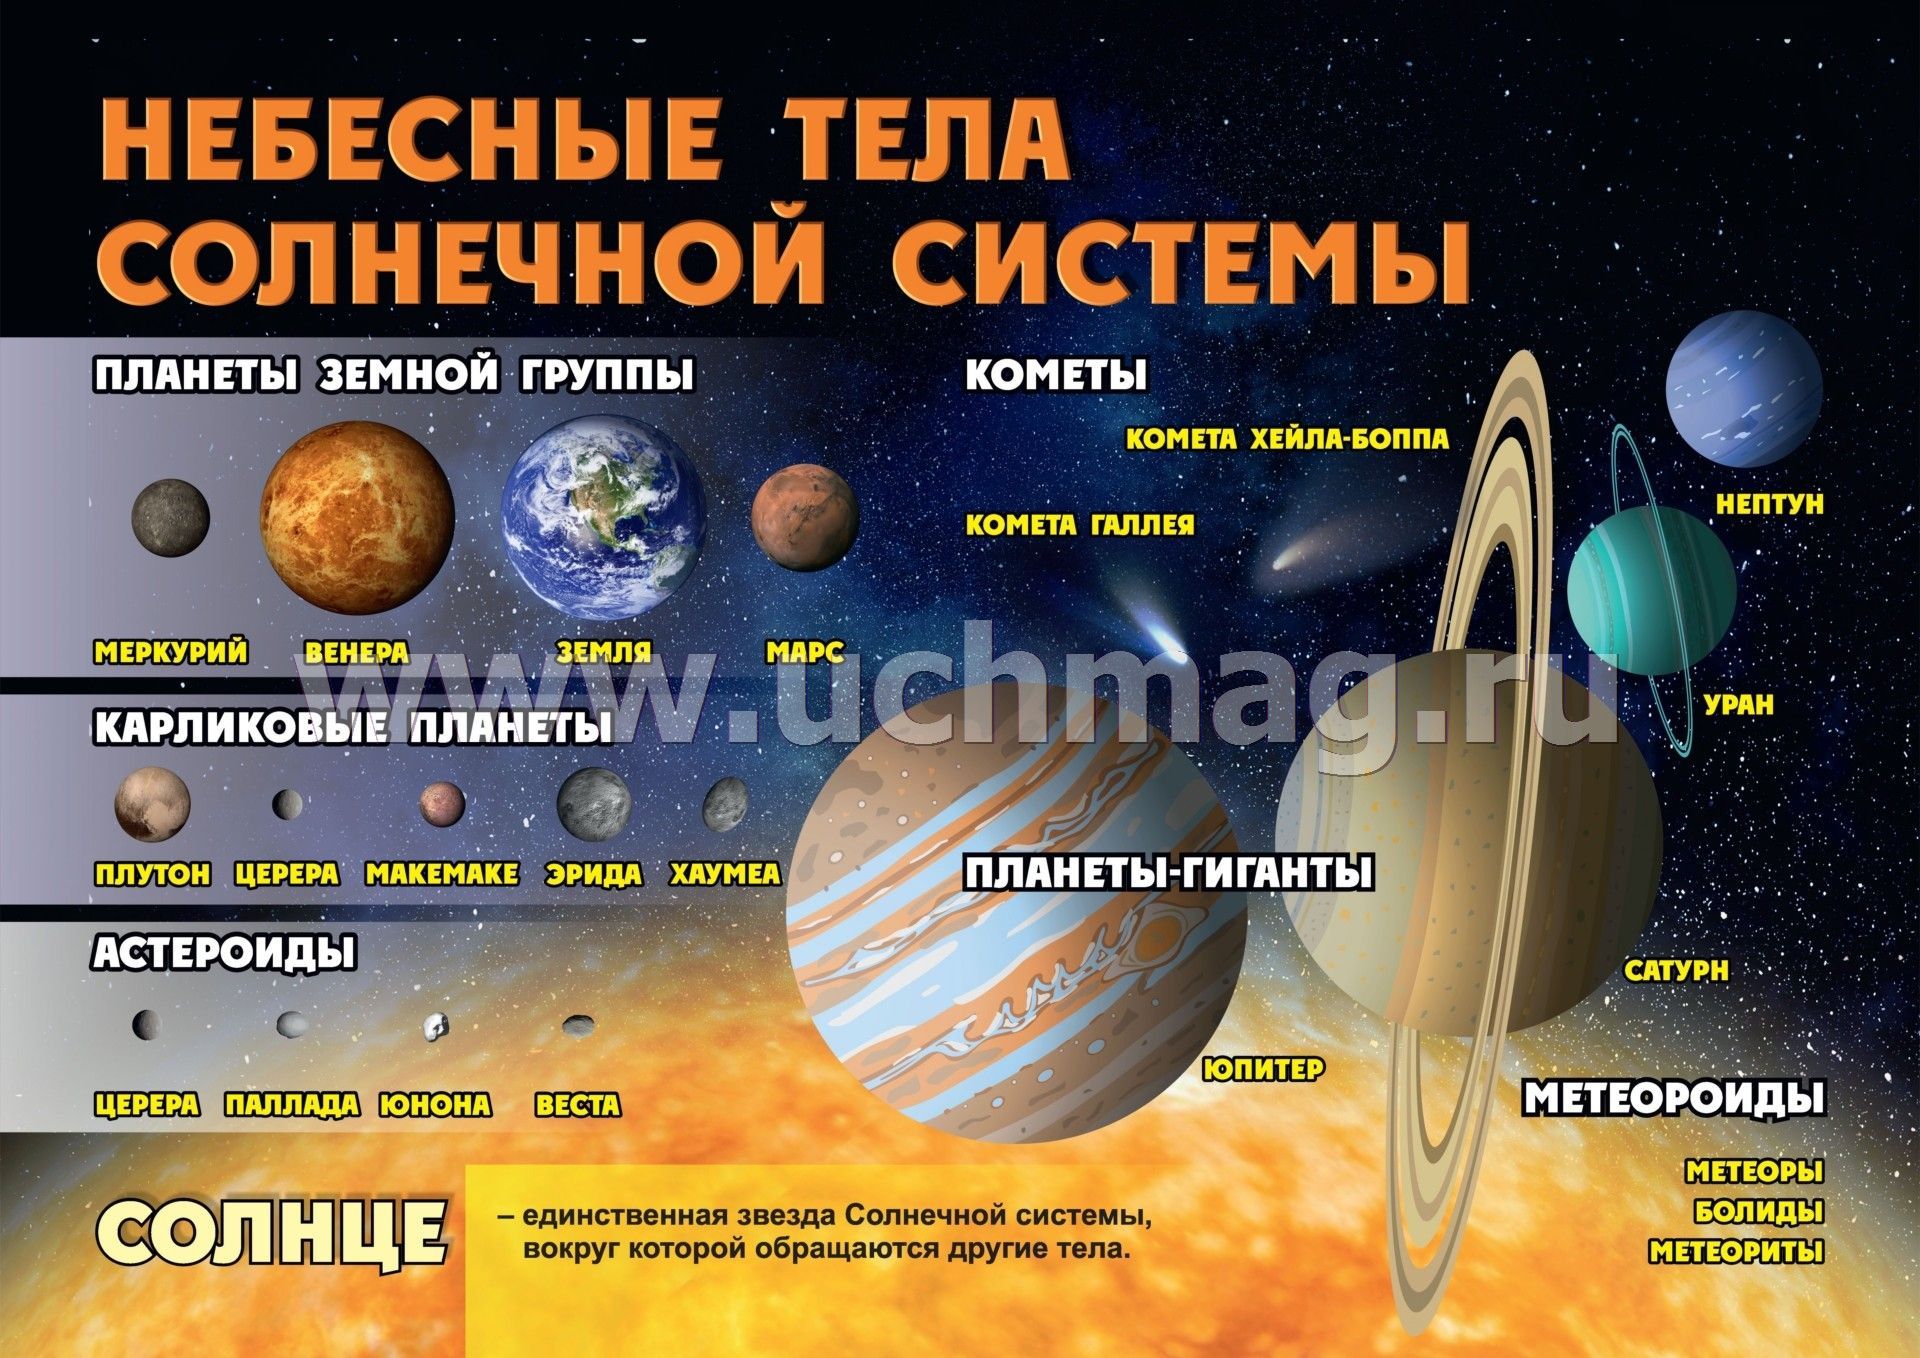 Что есть космосе название. Небесные тела солнечной системы. Плакат по астрономии. Планеты солнечной системы кометы. Космические объекты солнечной системы.